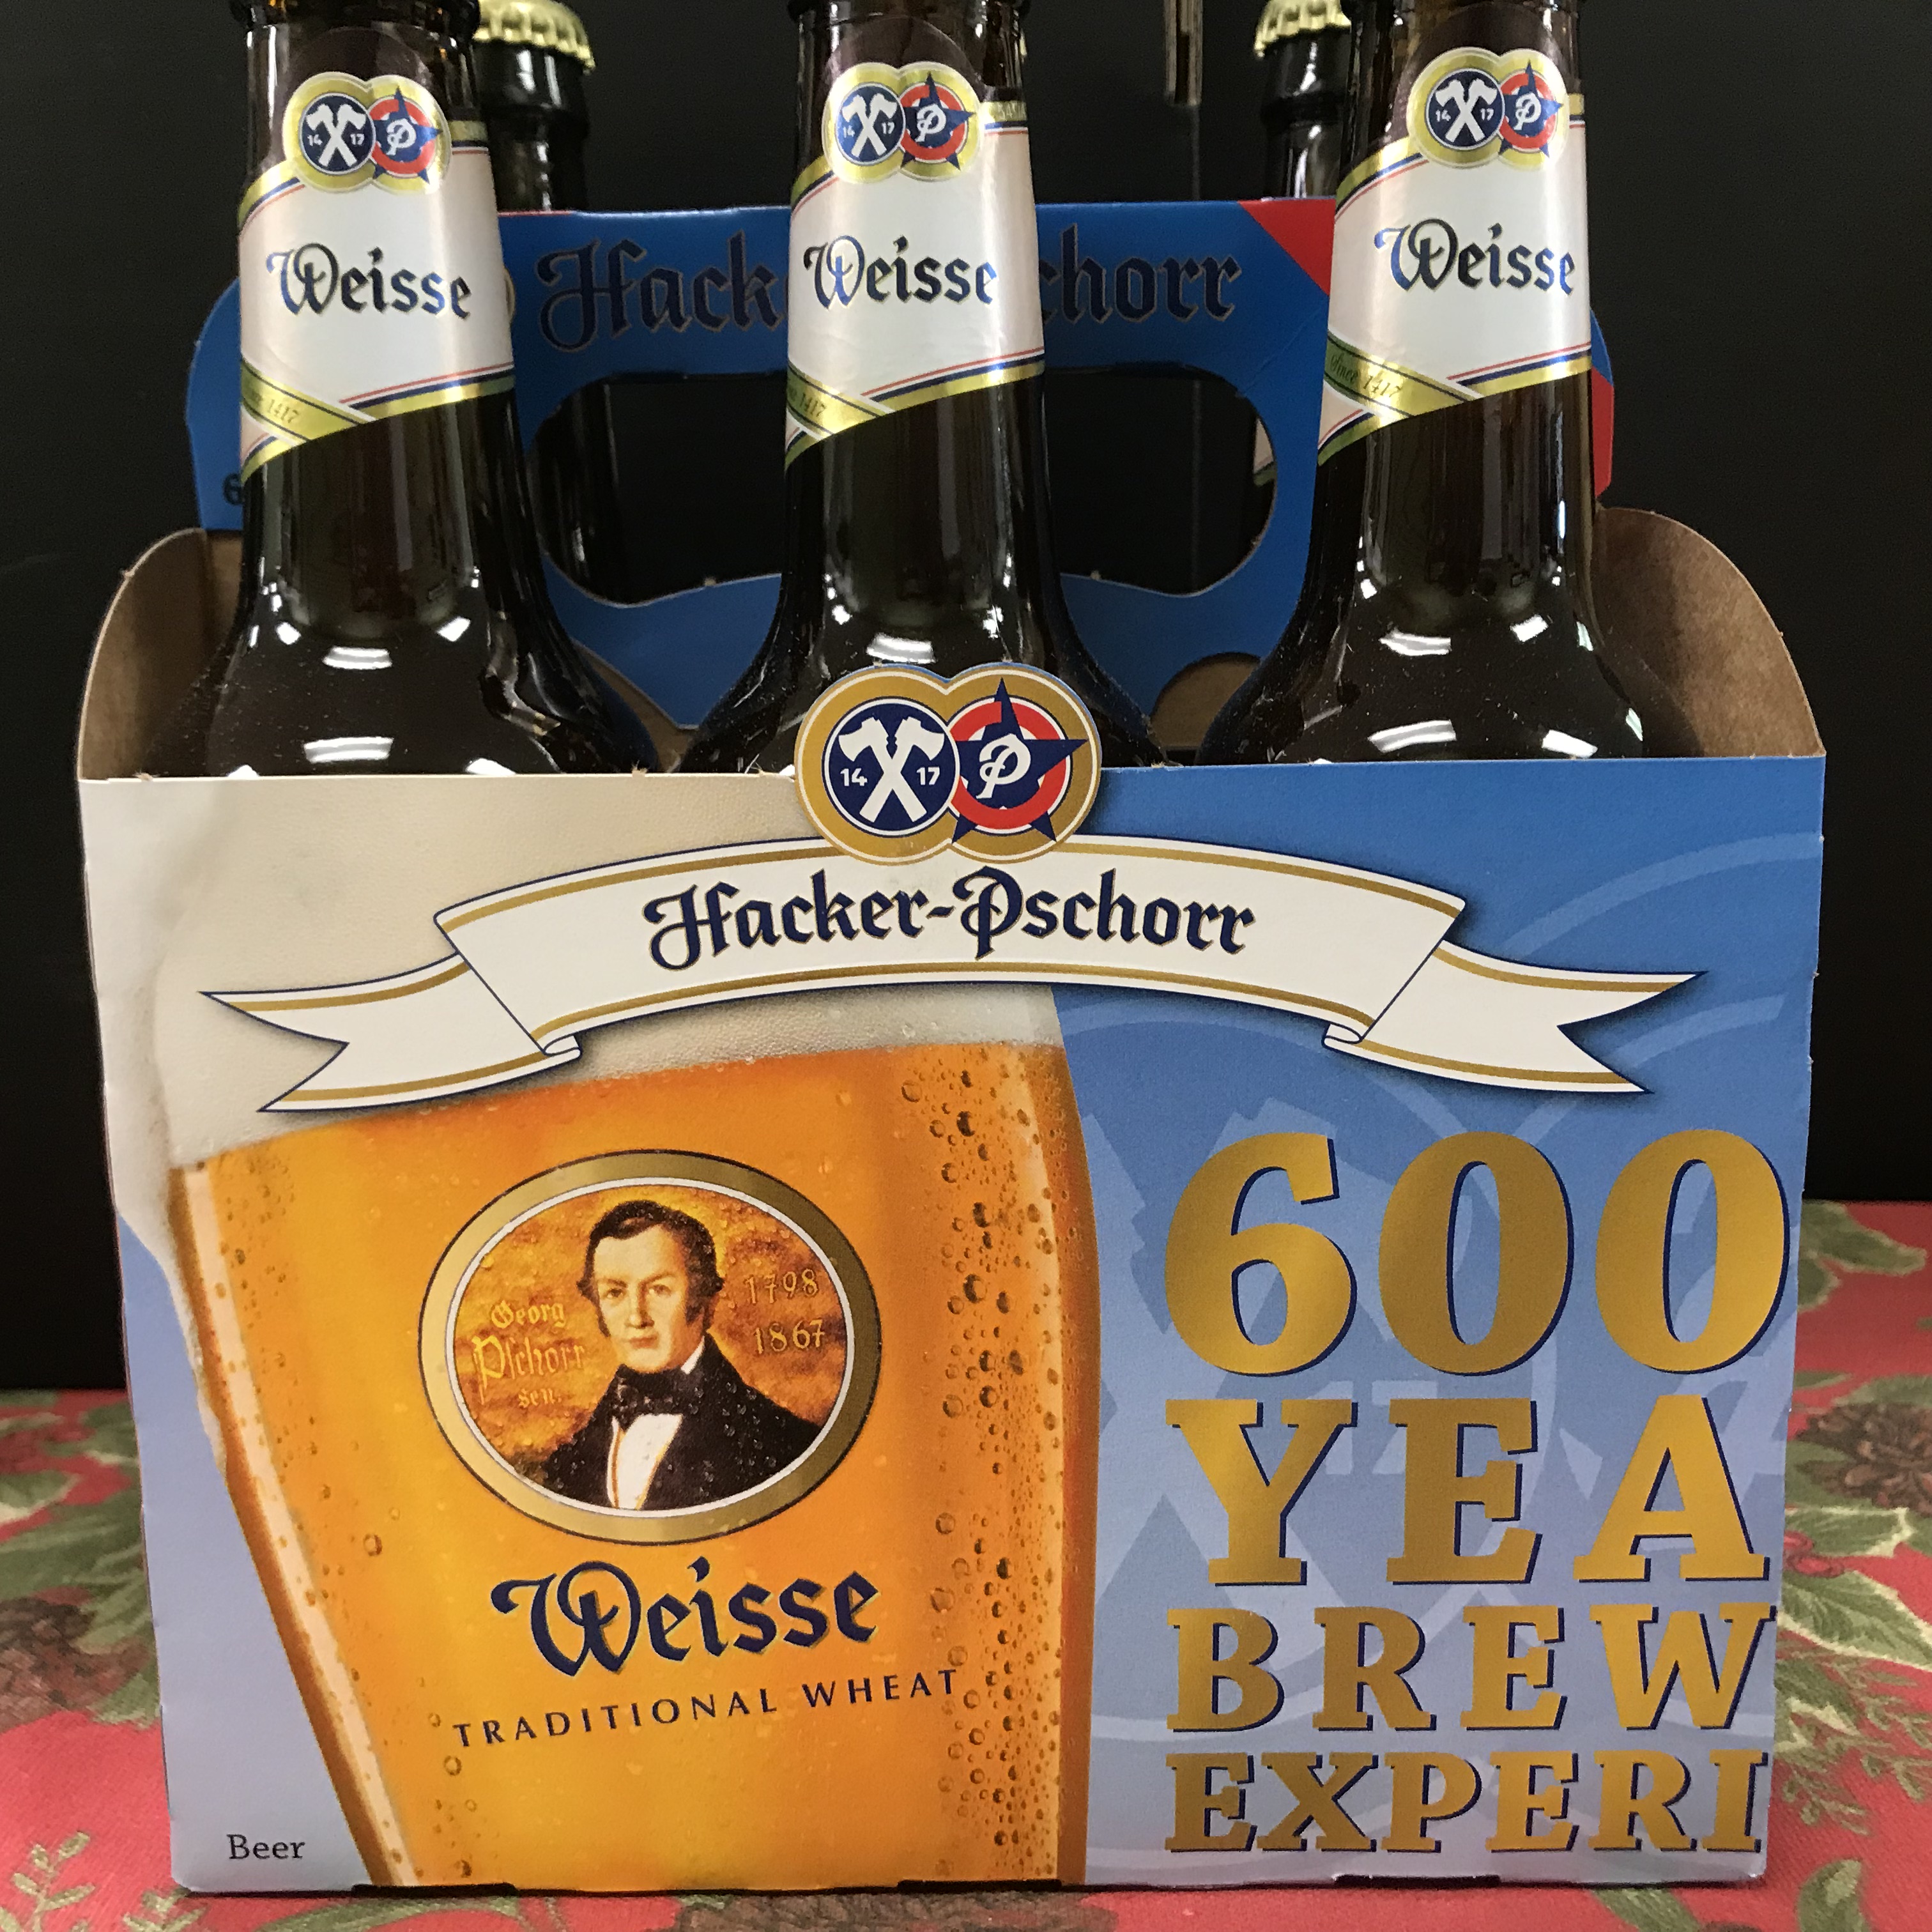 Hacker Pschorr Weisse Wheat beer 6 x 120z